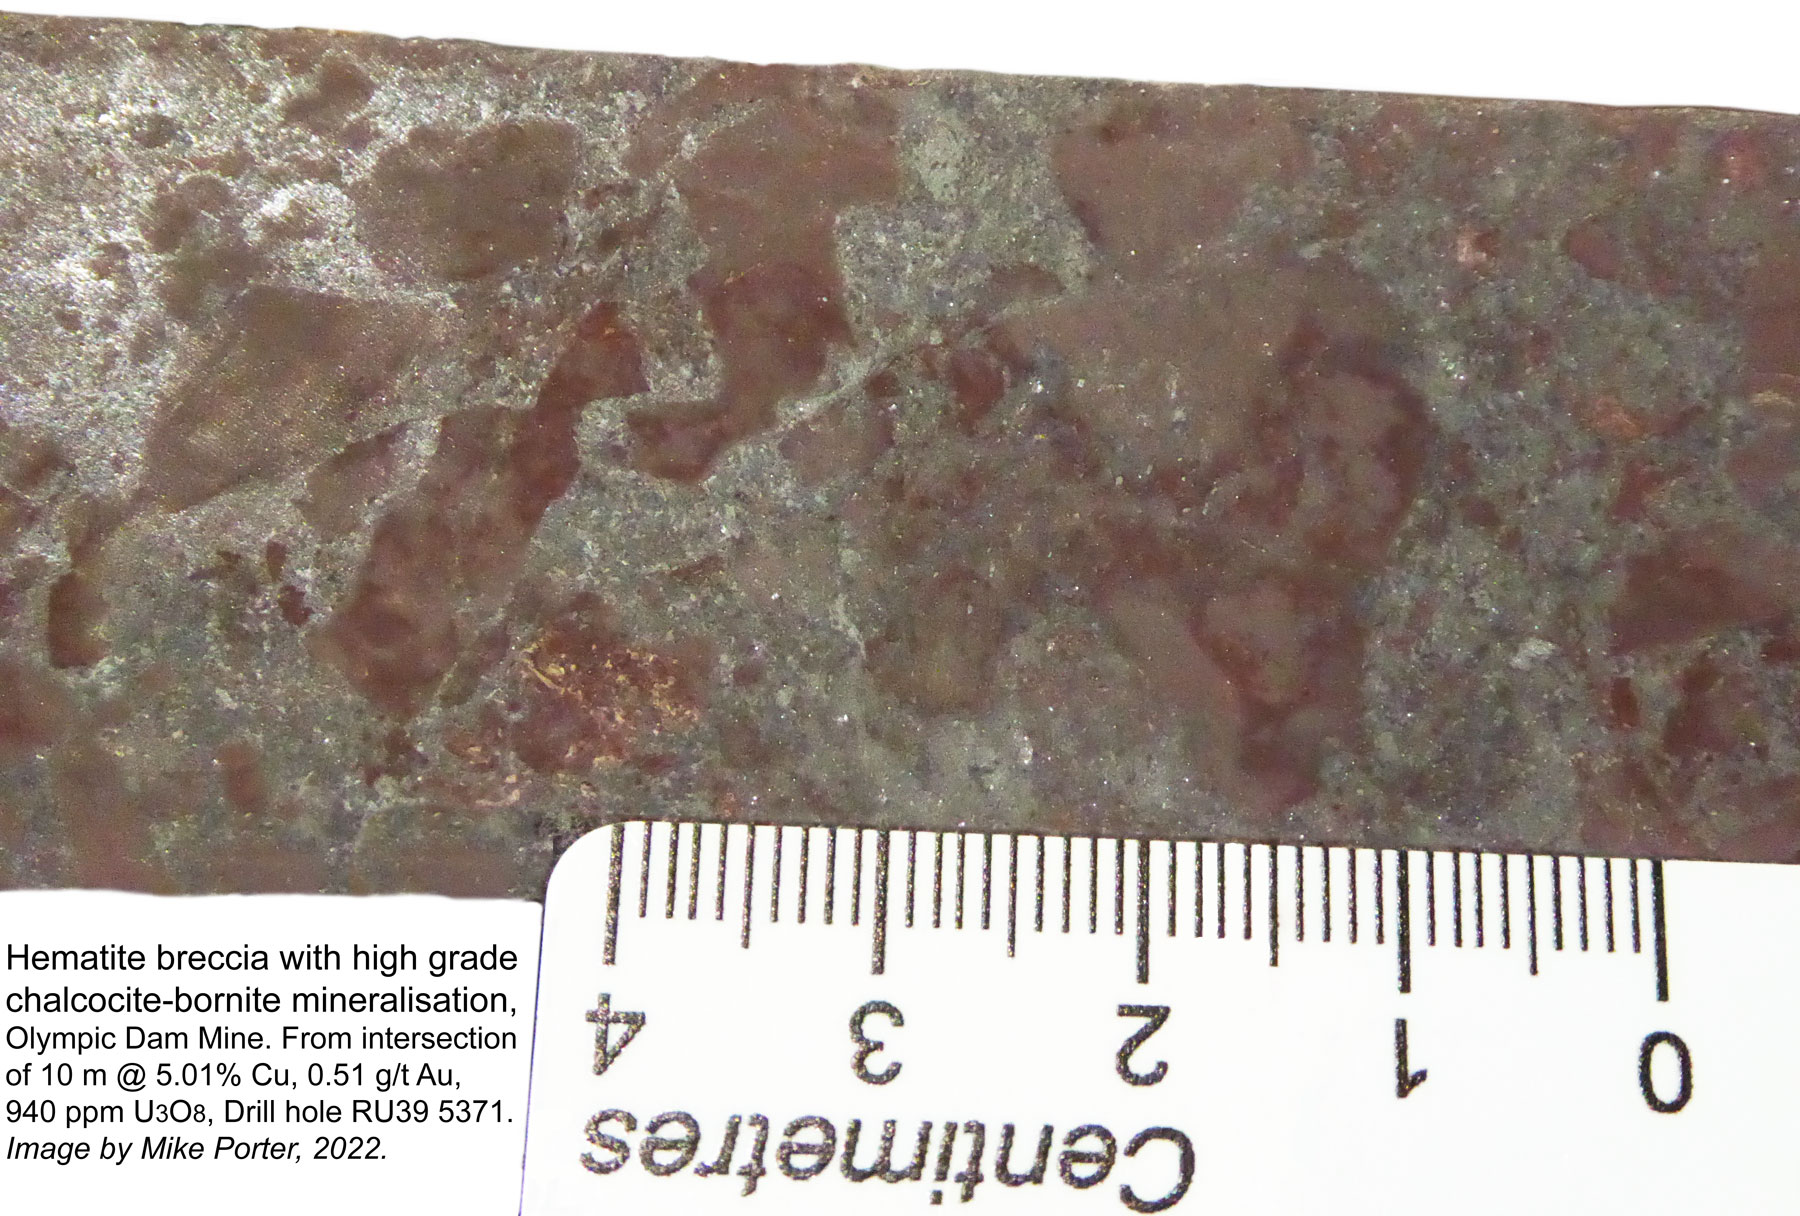 High grade mineralised hematite breccia